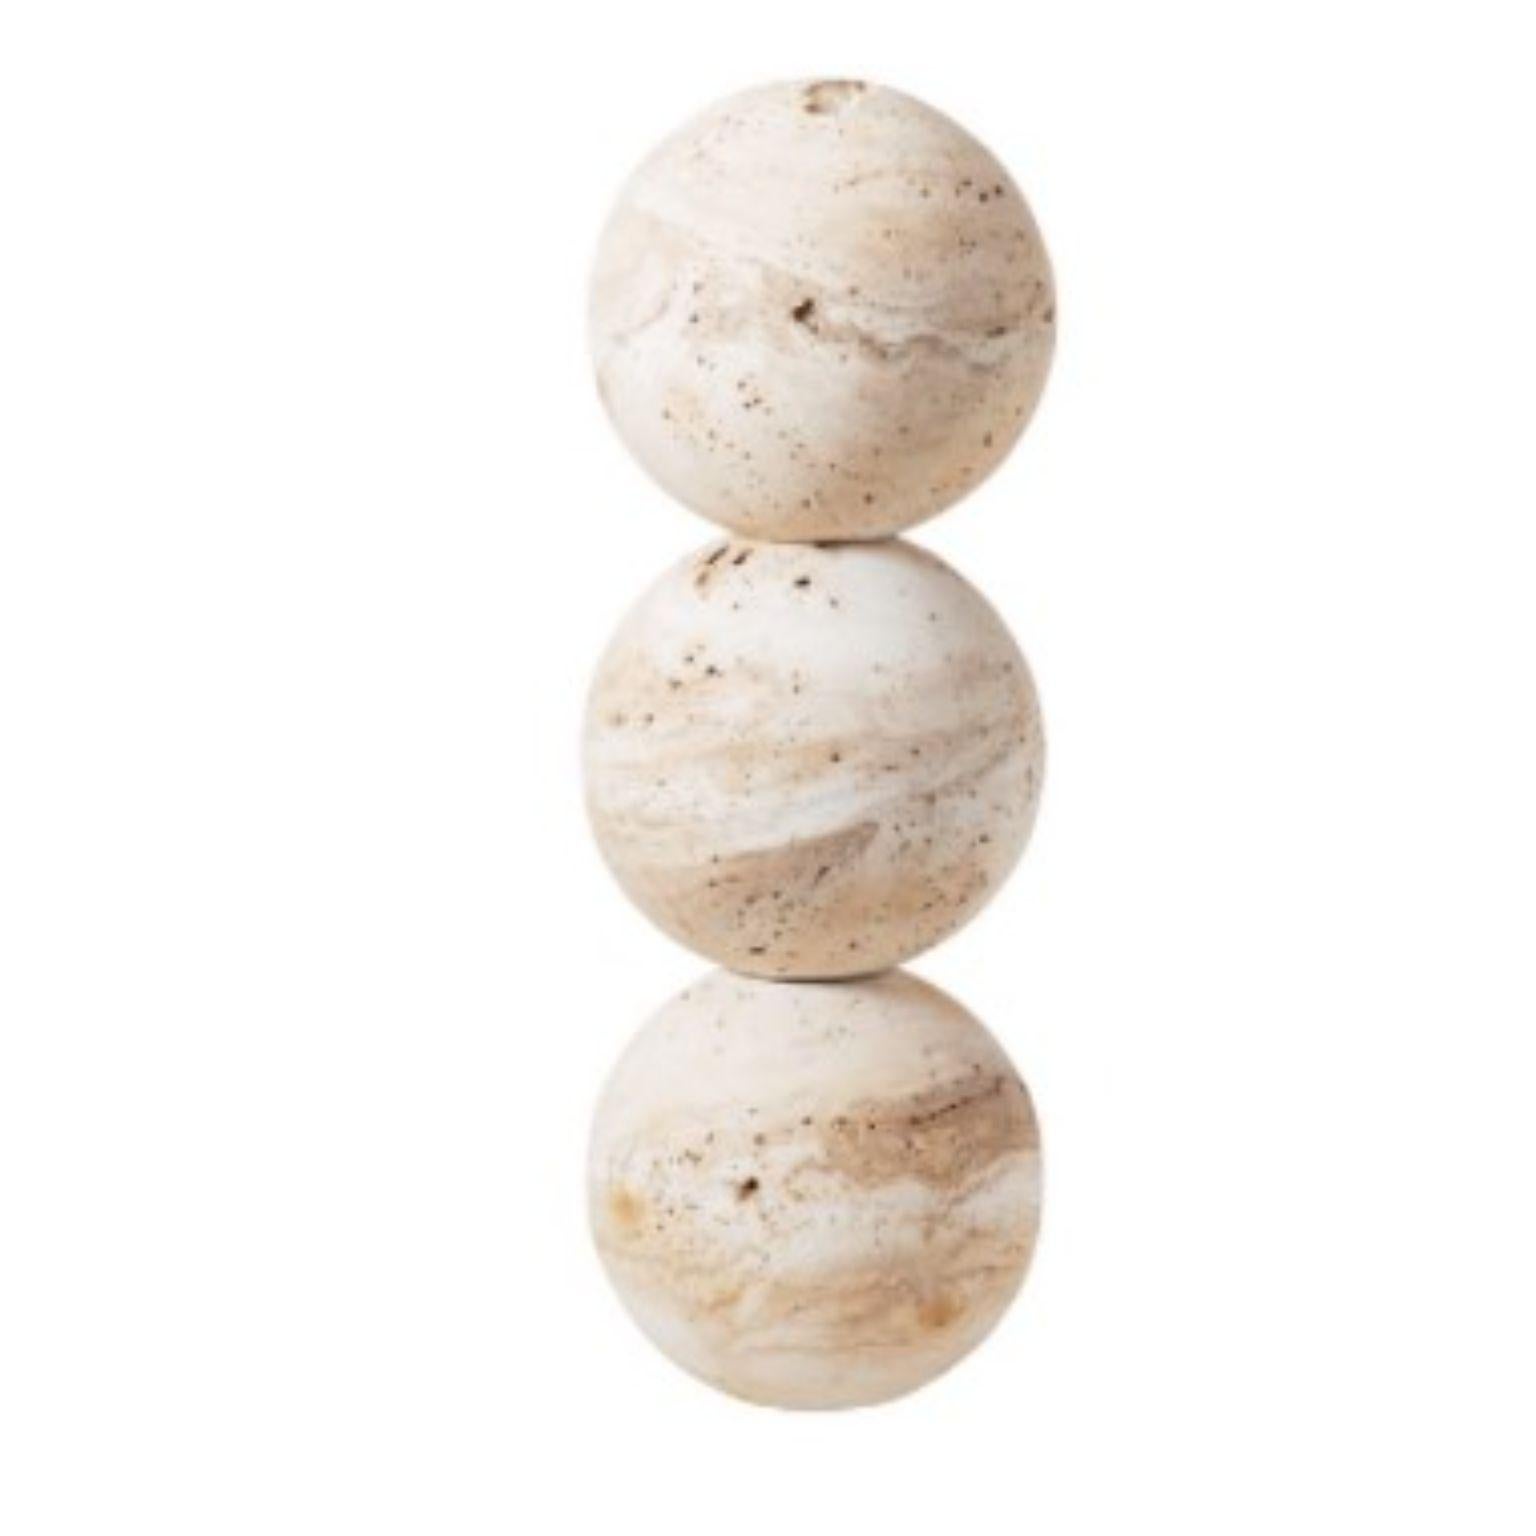 Jupiter 3 von Turbina
Archäologie der Zukunft
Abmessungen: Ø 19,5 cm x H58,5 cm
MATERIALIEN: MDF

Das Projekt Jupiter geht von der Idee des Steins als Symbol der Heiligkeit aus. Daher ist Jupiter ein modulares Stück, das aus Kugeln und Halbkugeln